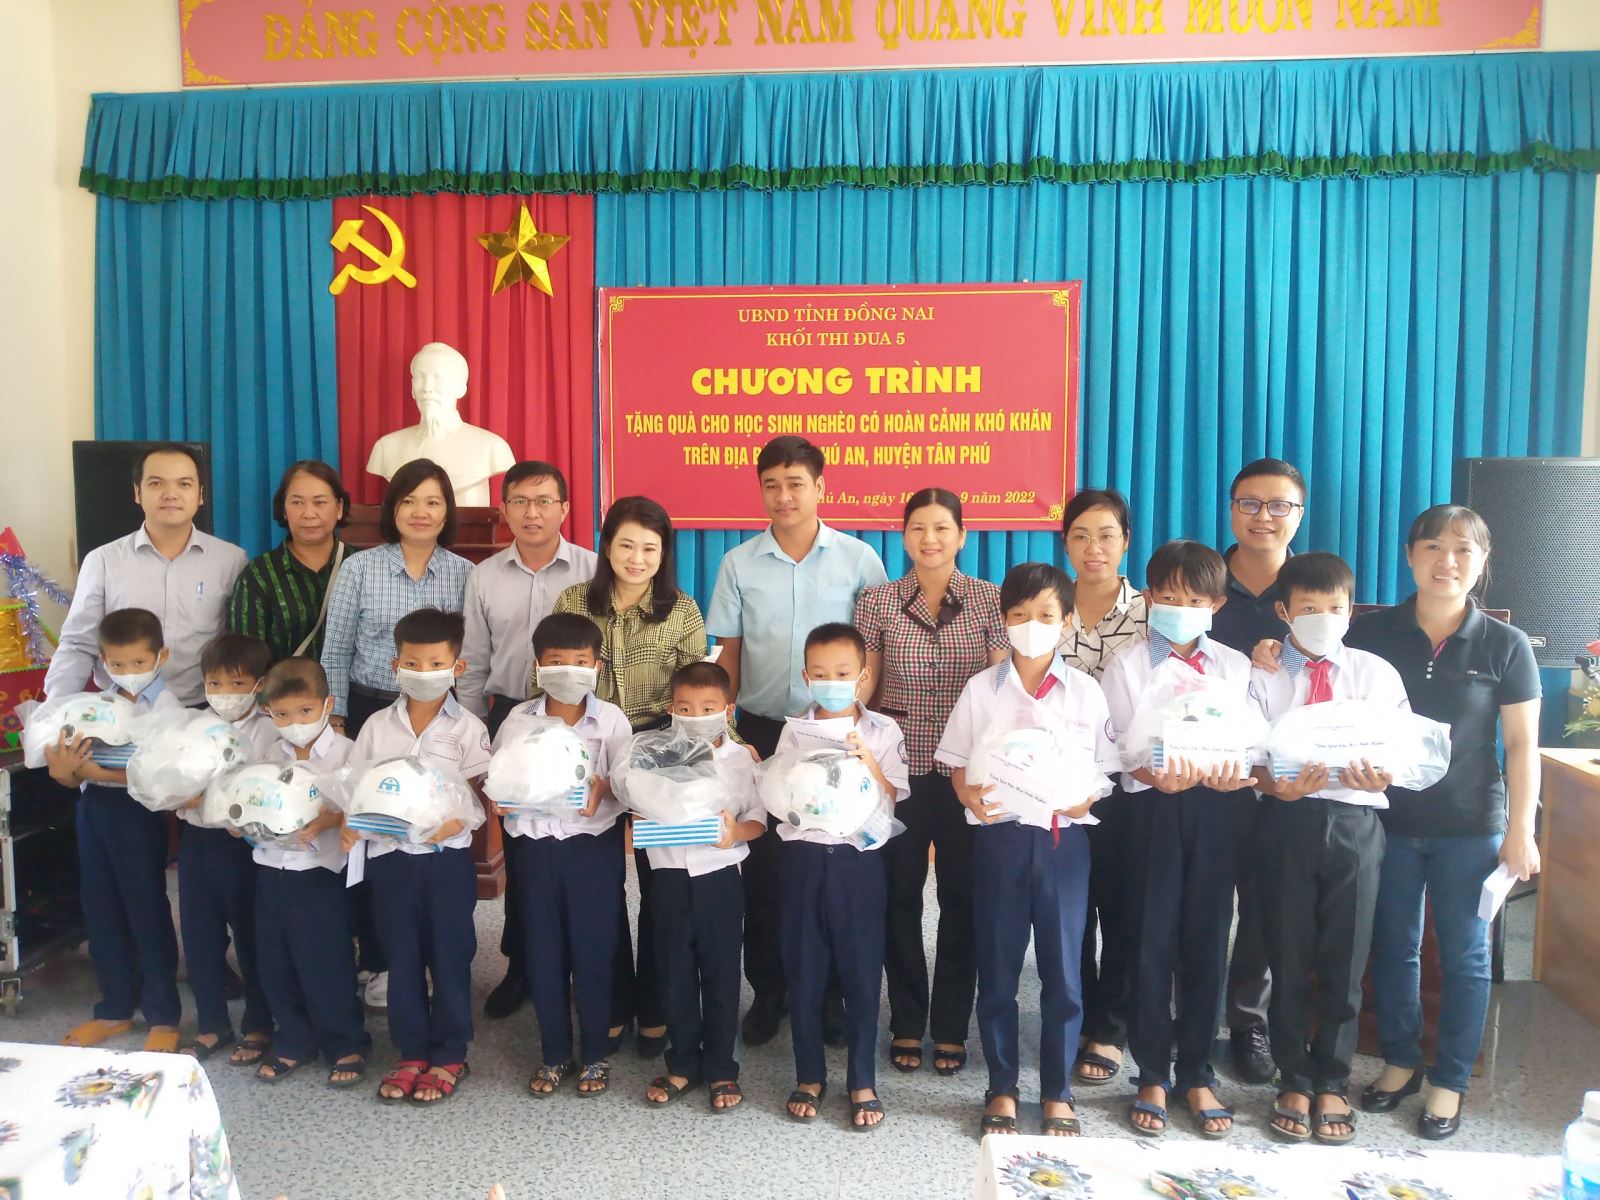 Khối thi đua số 5 tổ chức trao quà cho học sinh nghèo trên địa bàn huyện Tân Phú